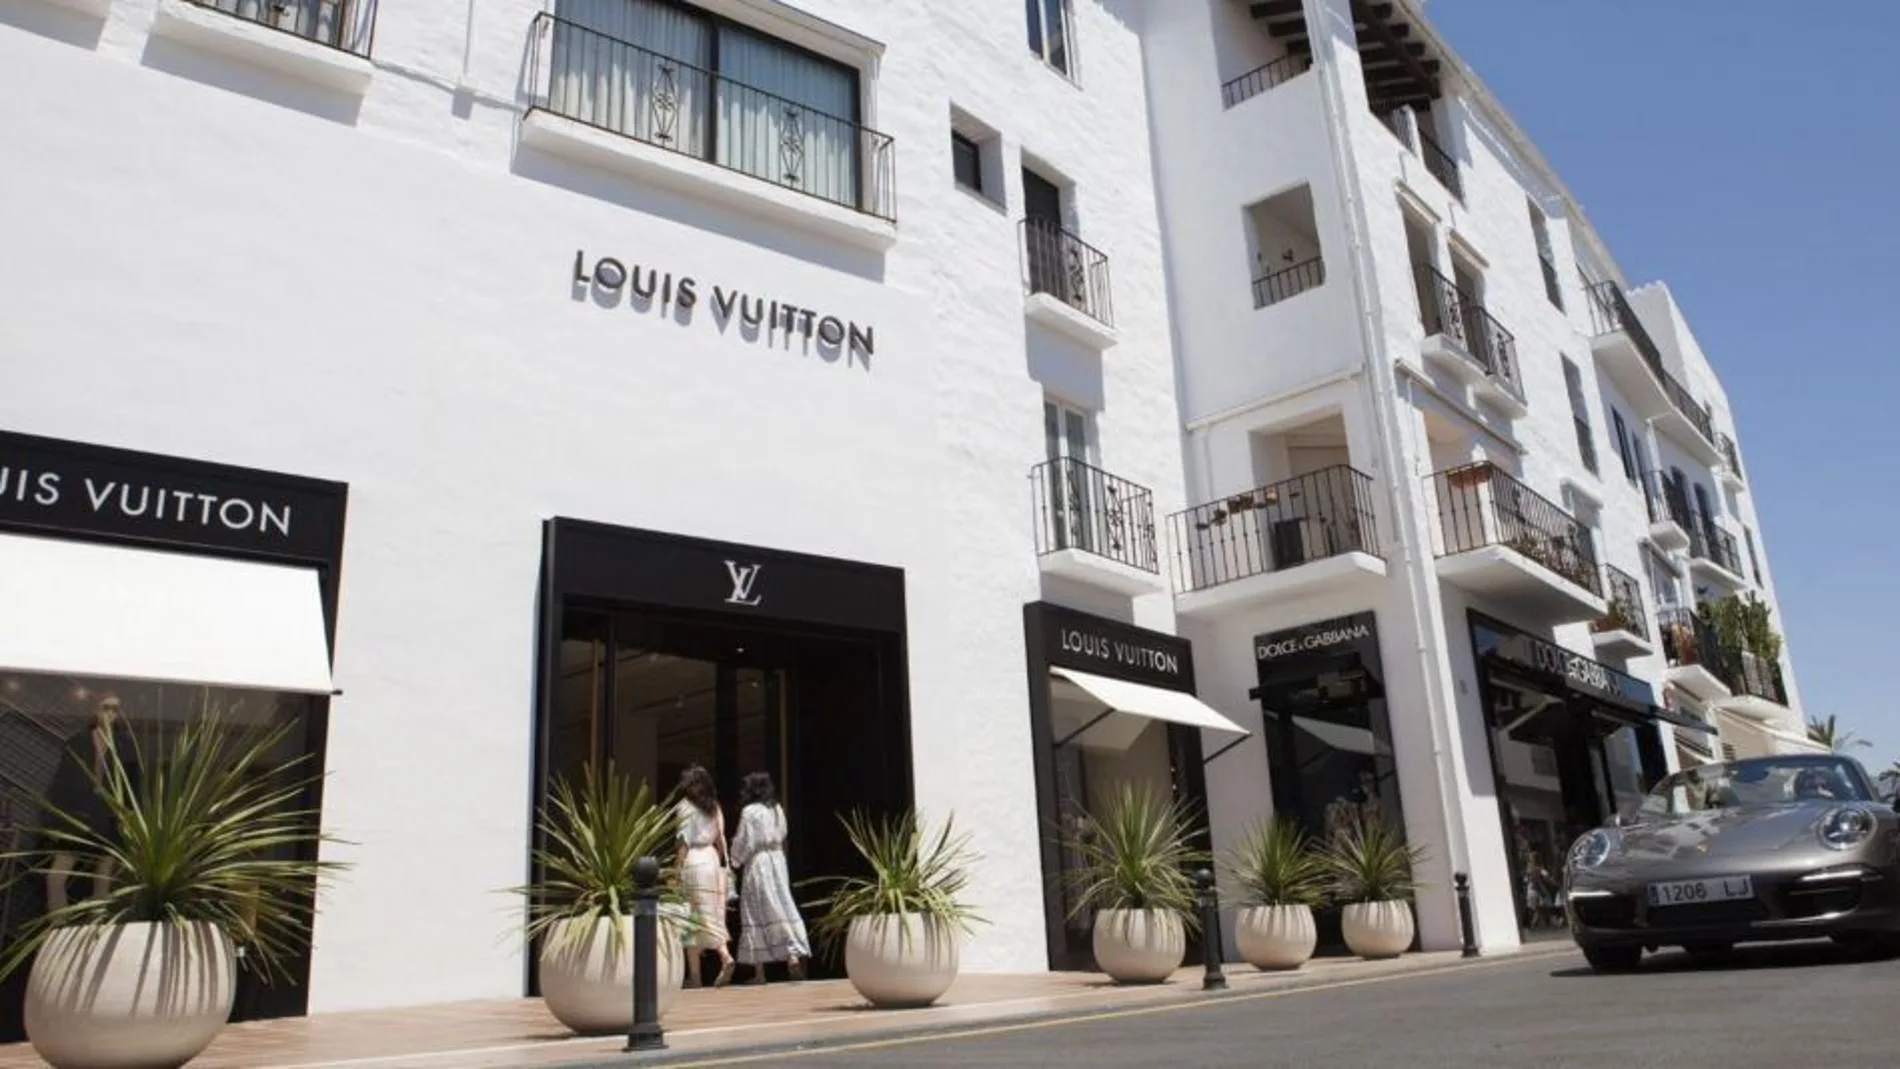 Local de la firma Louis Vuitton en Puerto Banús